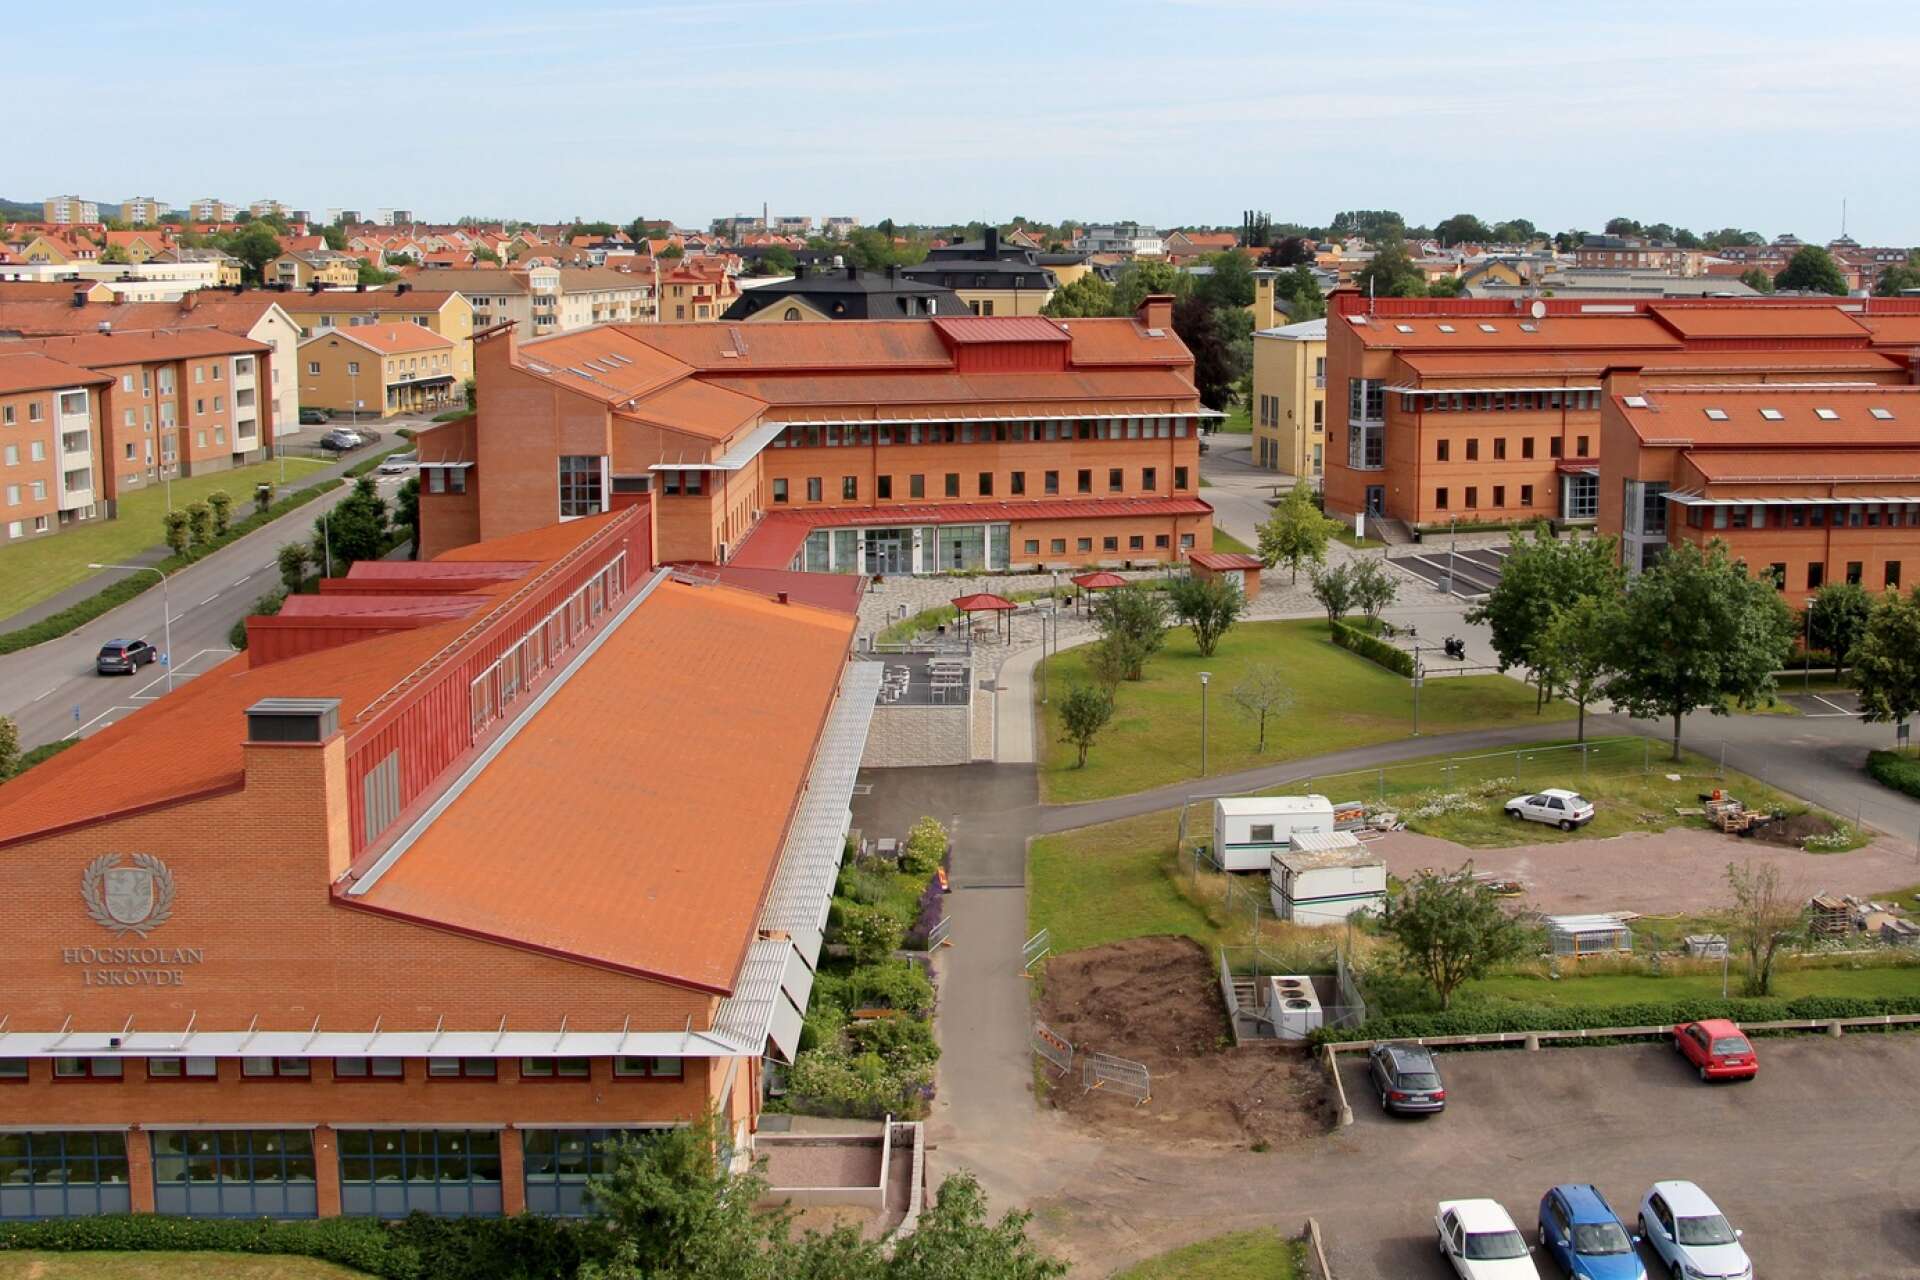 Högskolan i Skövde har lovat regeringen att utöka antalet platser så att fler kan utbilda i stället för att gå arbetslösa. Arkivbild.